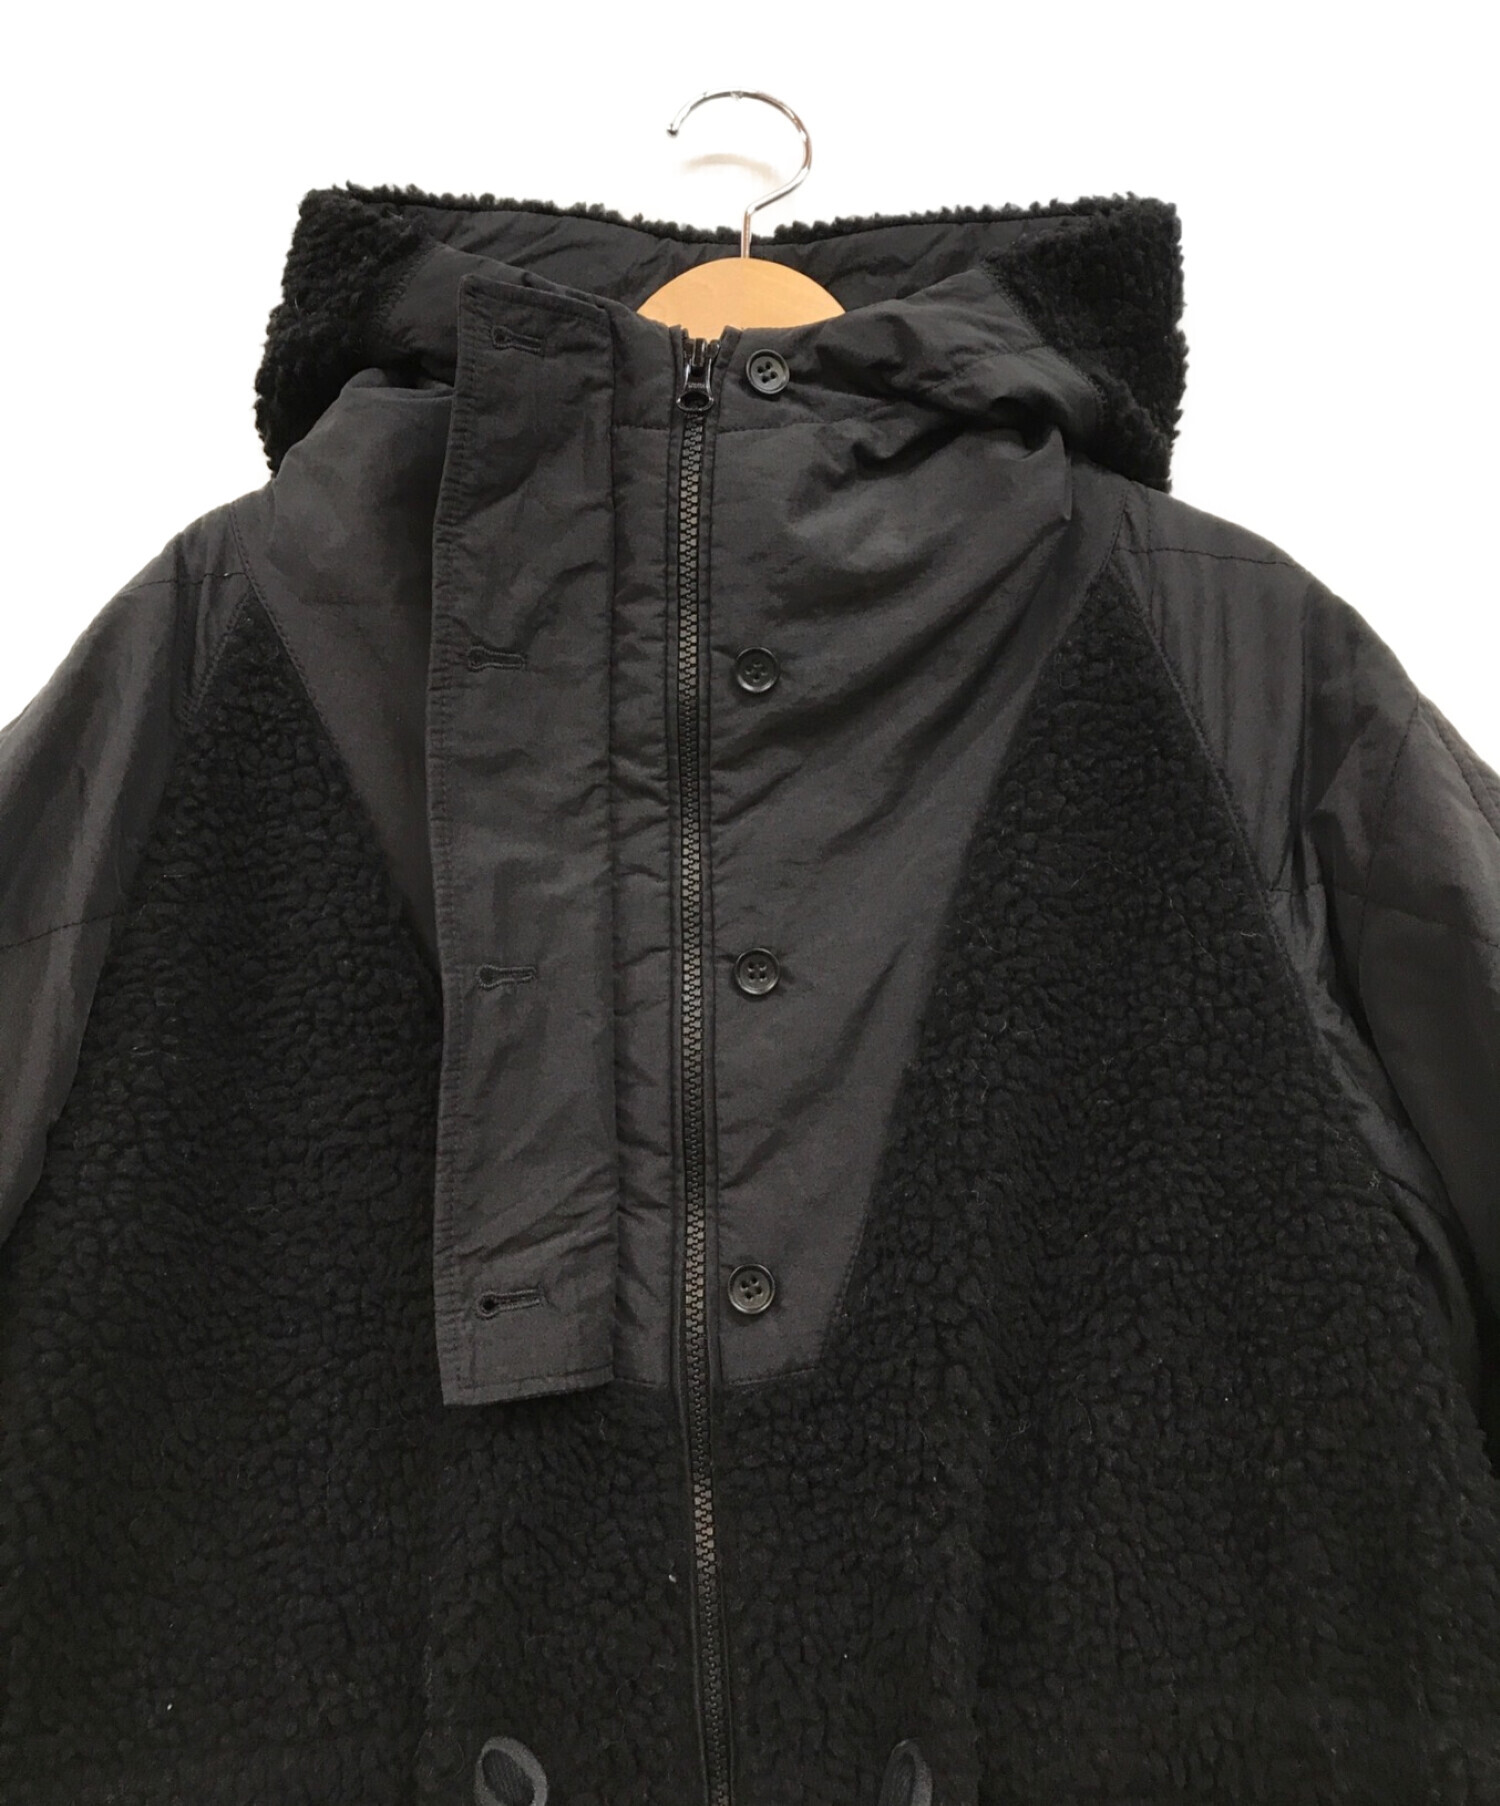 袖丈60cmDemi-Luxe BEAMS キルトコンビ コート BLACK サイズ 36